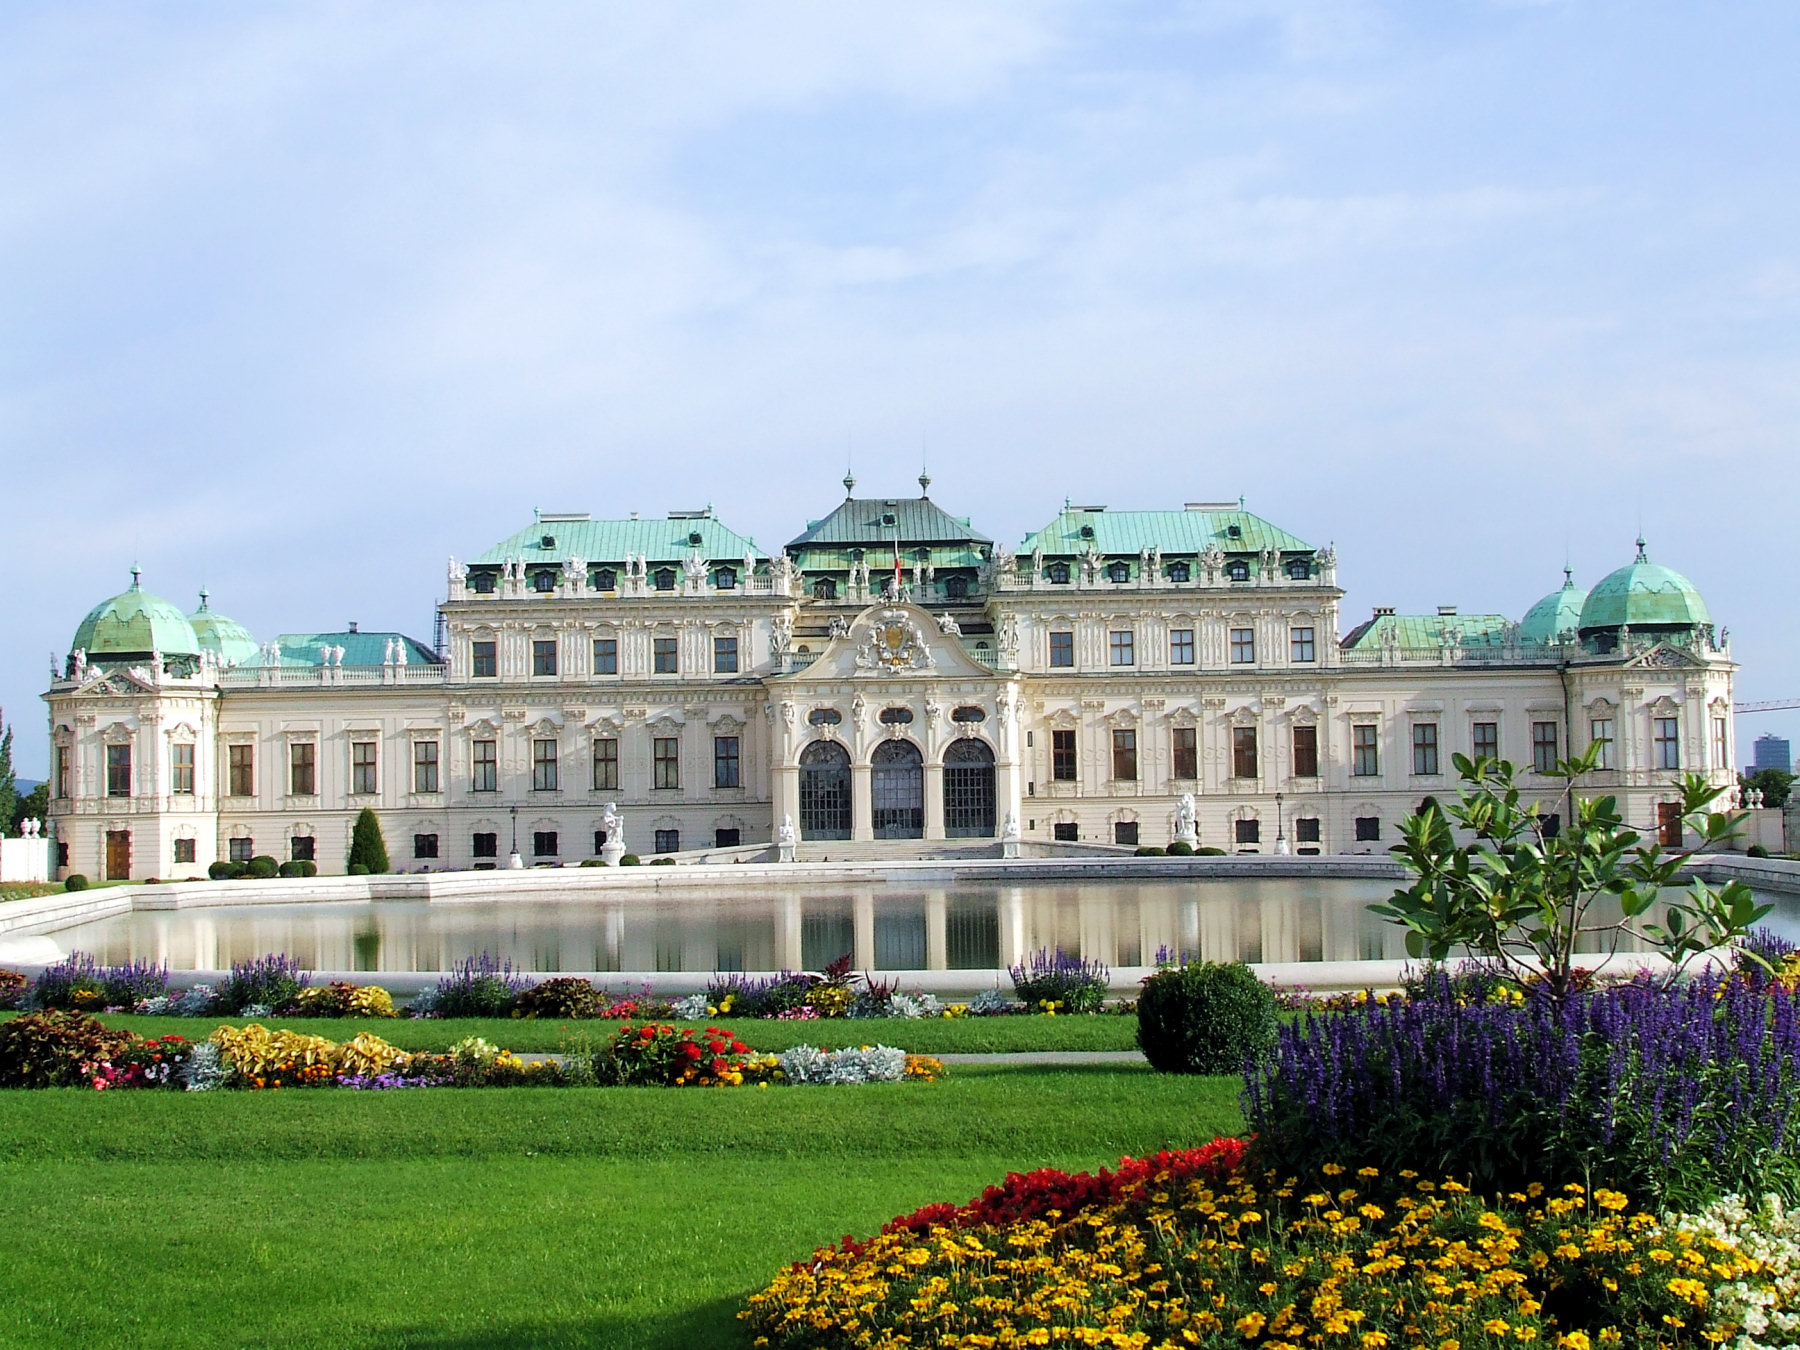 http://upload.wikimedia.org/wikipedia/commons/5/59/Belvedere_Wien1.jpg